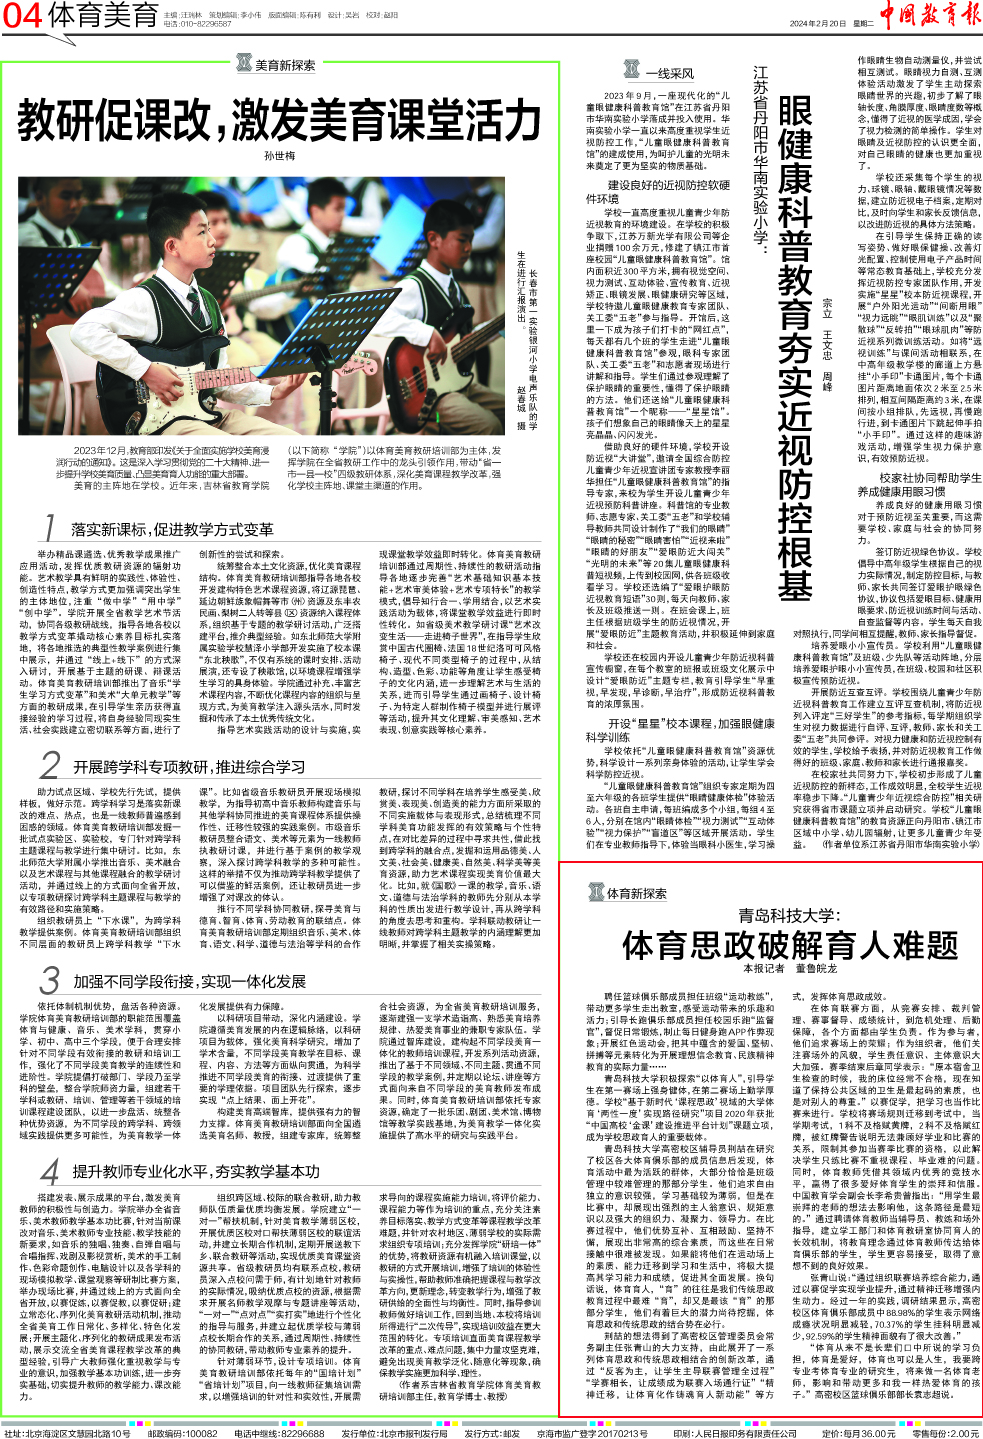 《中国教育报》报道学校体育思政育人工作